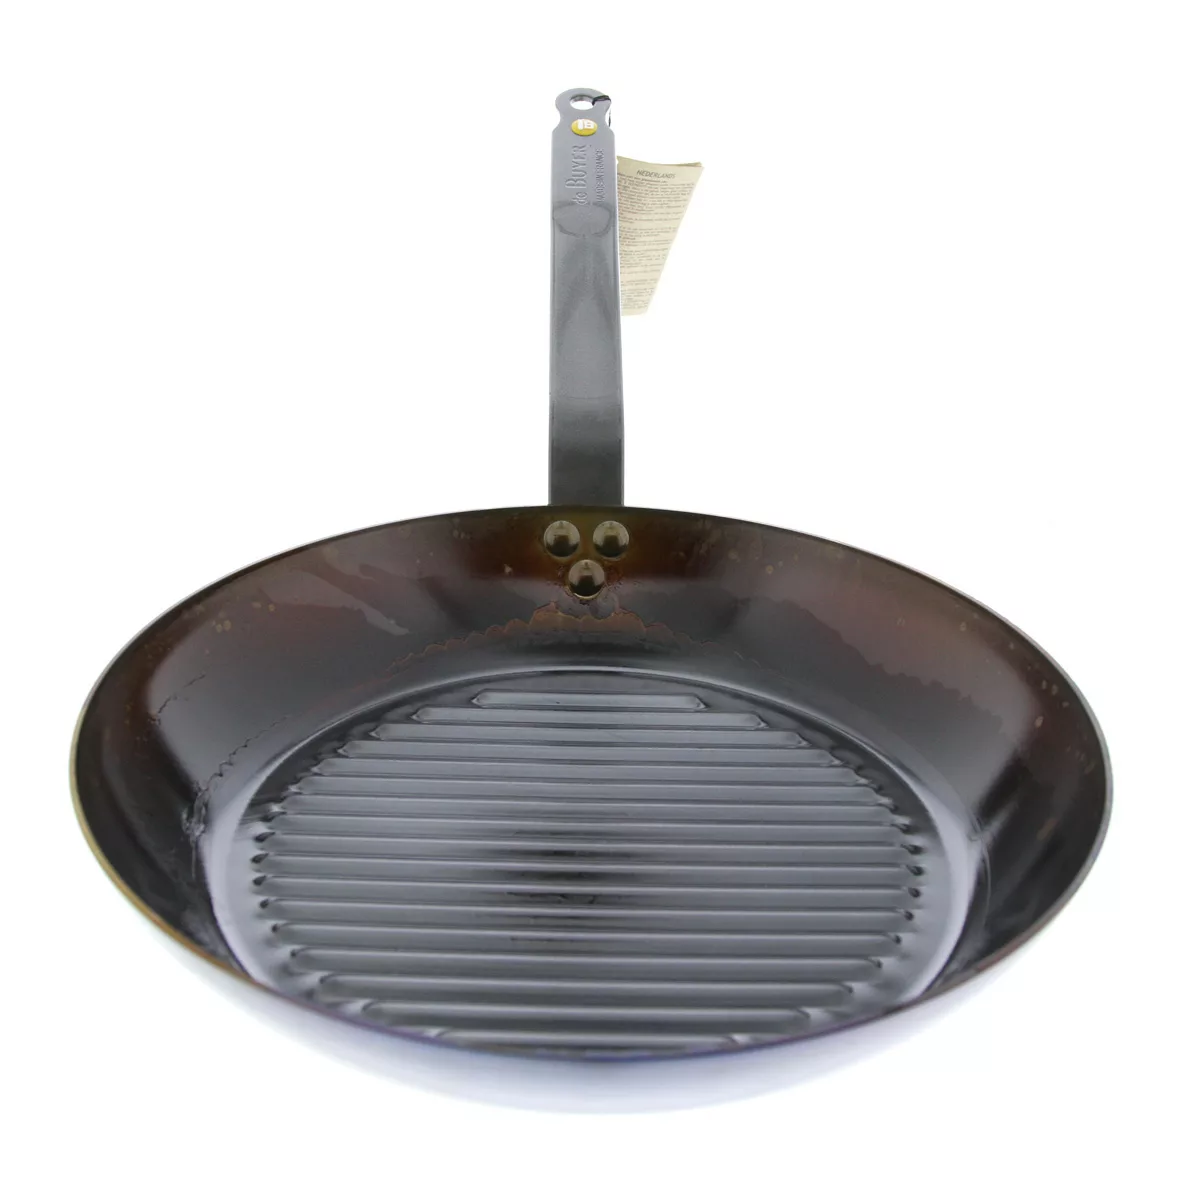 de Buyer Mineral B Grillpfanne 32 cm eingebrannt - Eisen mit Bandstahlgriff günstig online kaufen